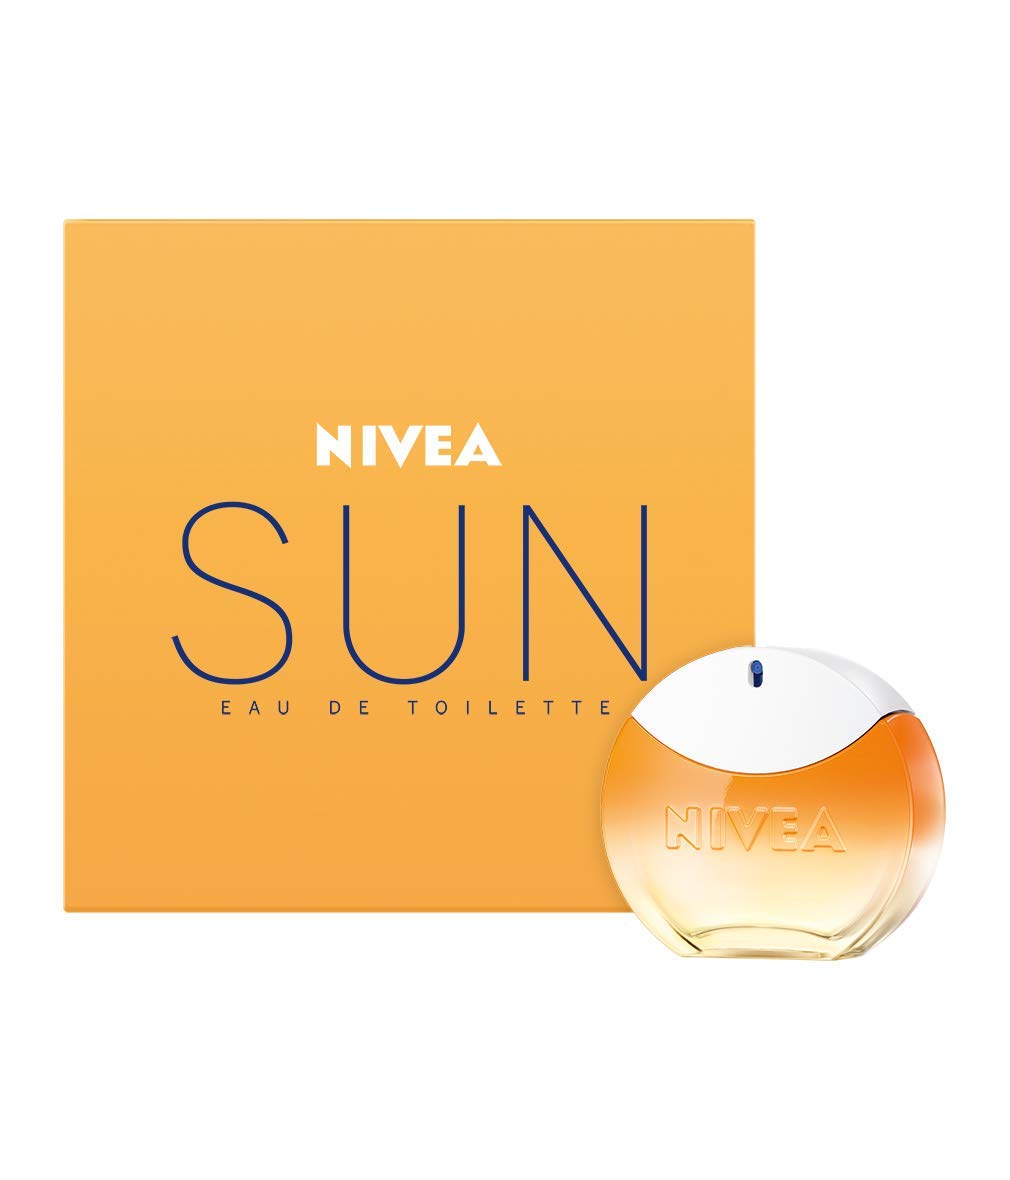 NIVEA SUN Eau de Toilette, Parfum mit dem Original Sonnencreme Duft, sommerlicher und erfrischender unisex, im ikonischen Parfüm-Flakon (30 ml)